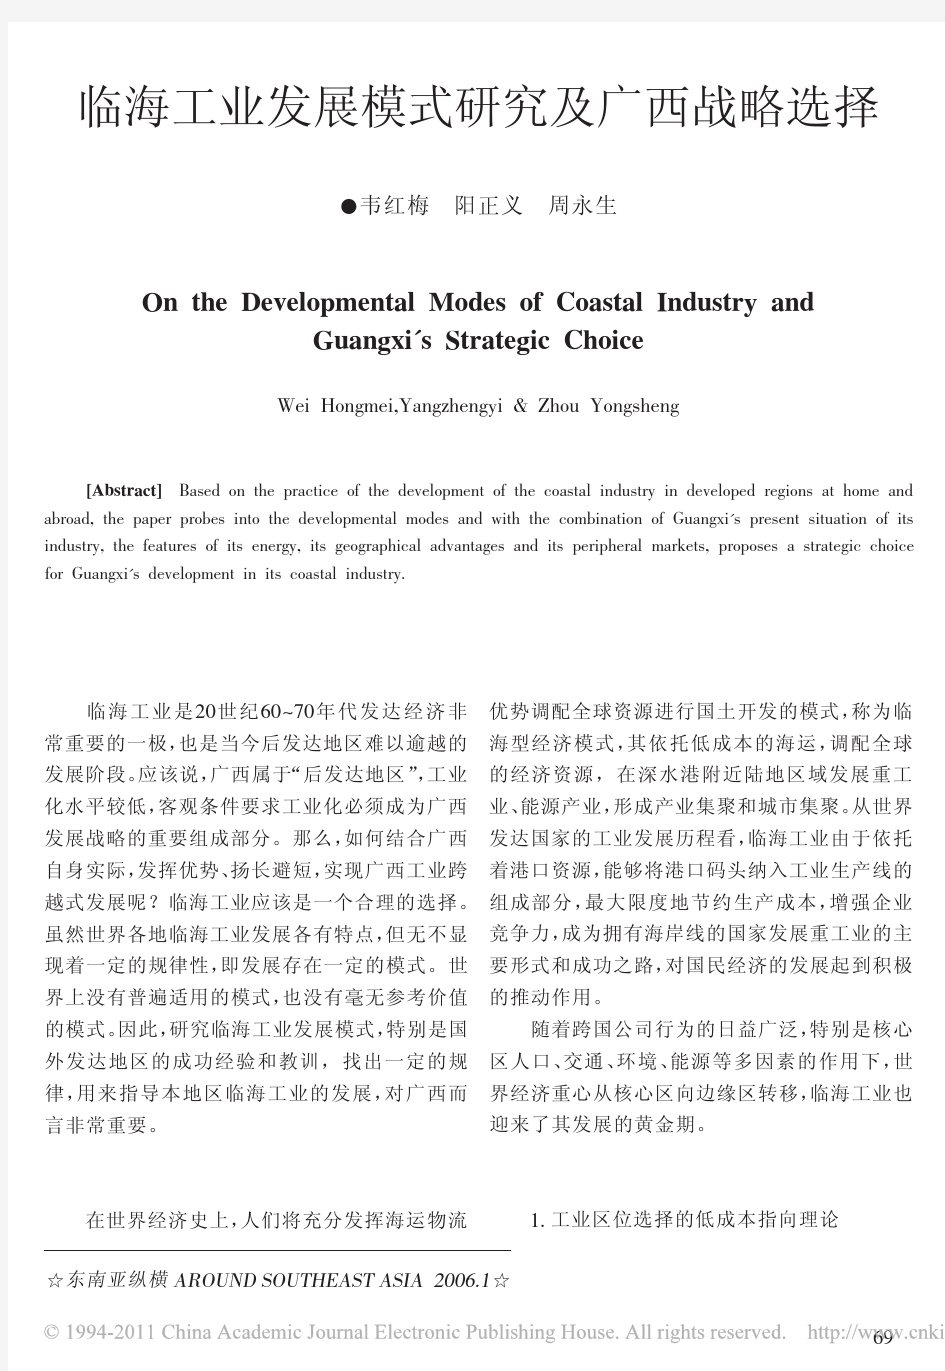 临海工业发展模式研究及广西战略选择